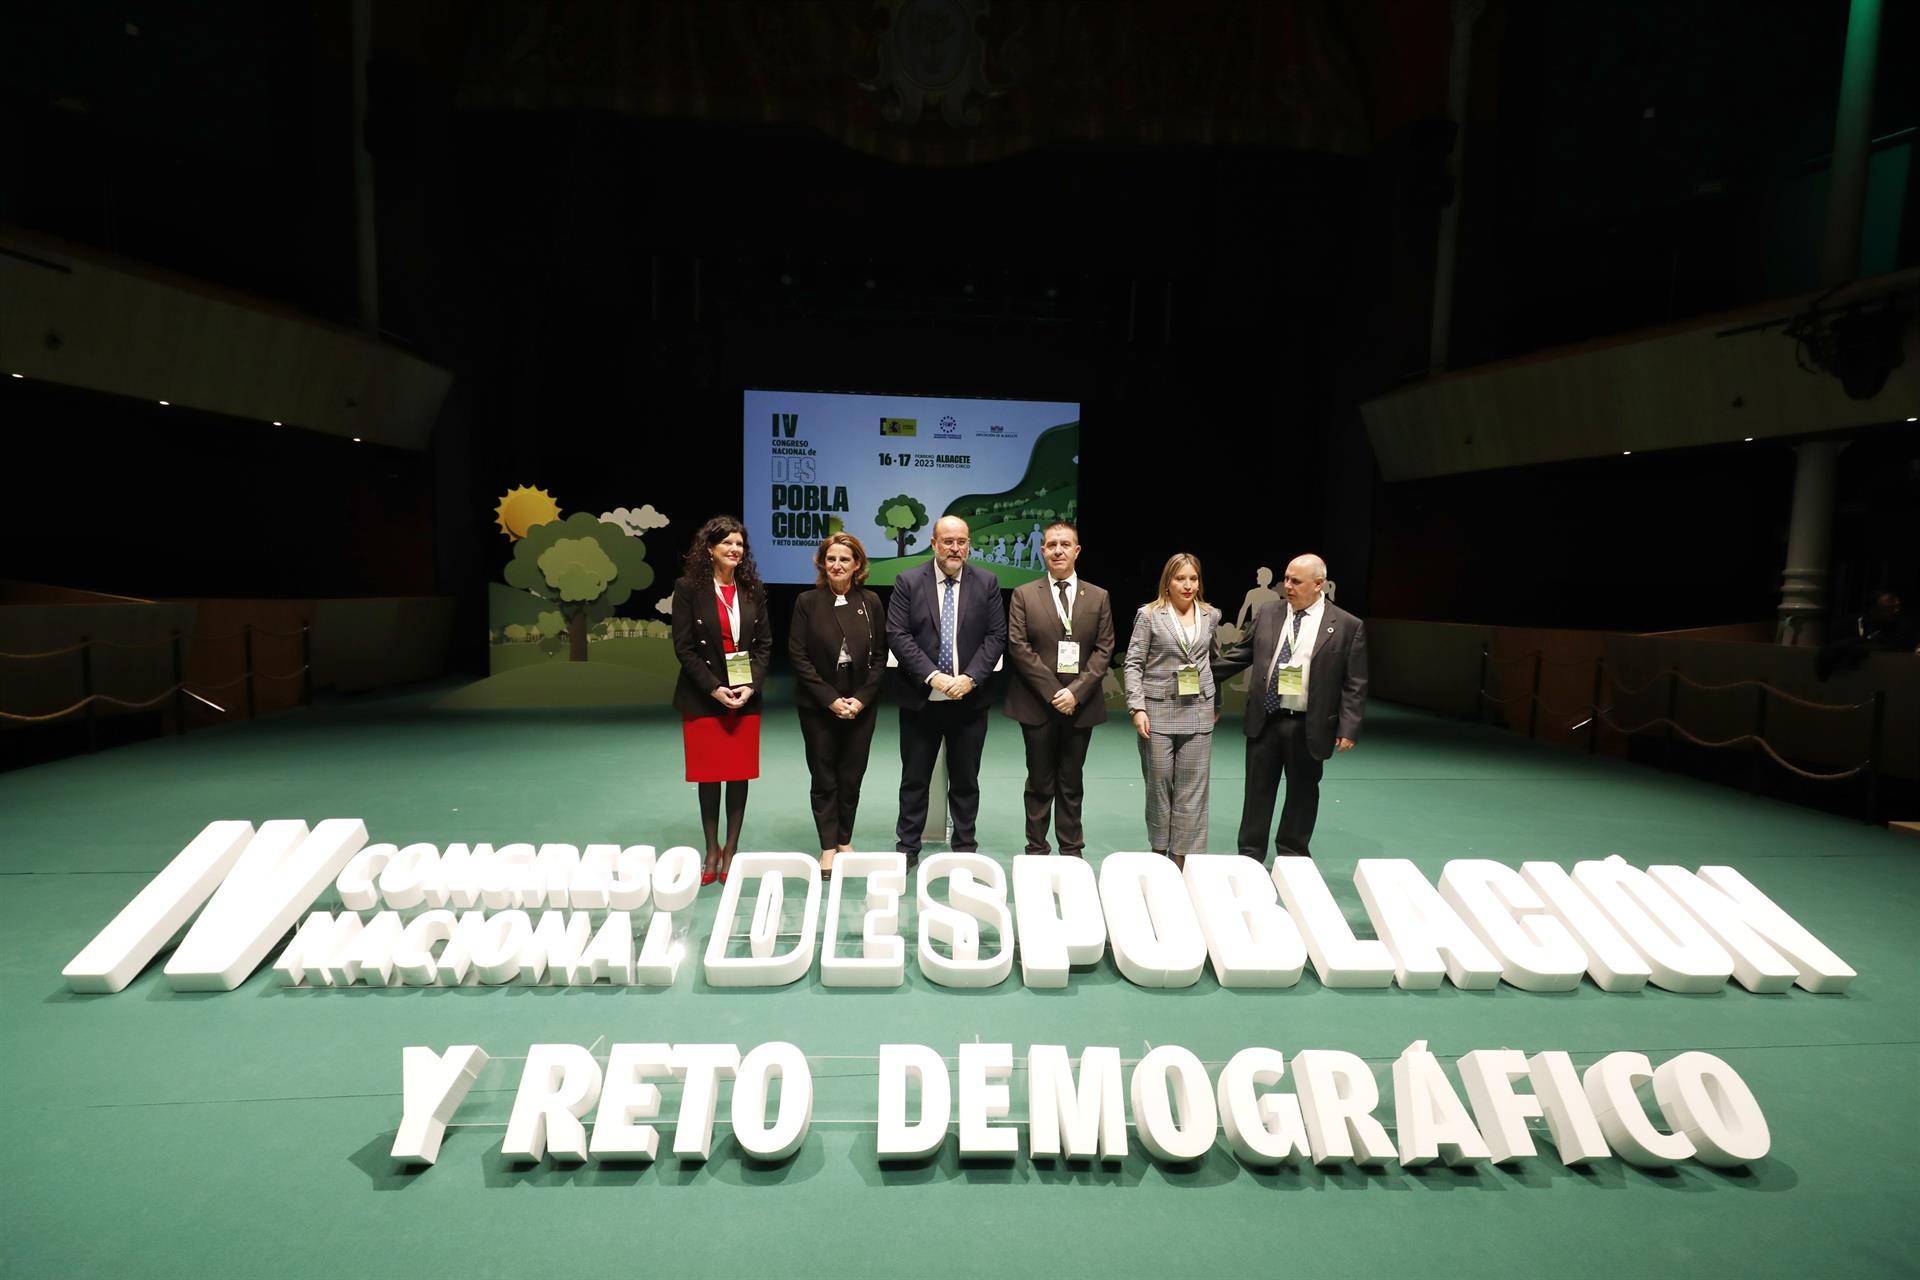 Inauguración del IV Congreso Nacional de Despoblación y Reto Demográfico, celebrado en el Teatro Circo de Albacete. EUROPA PRESS/LUIS VIZCAÍNO.